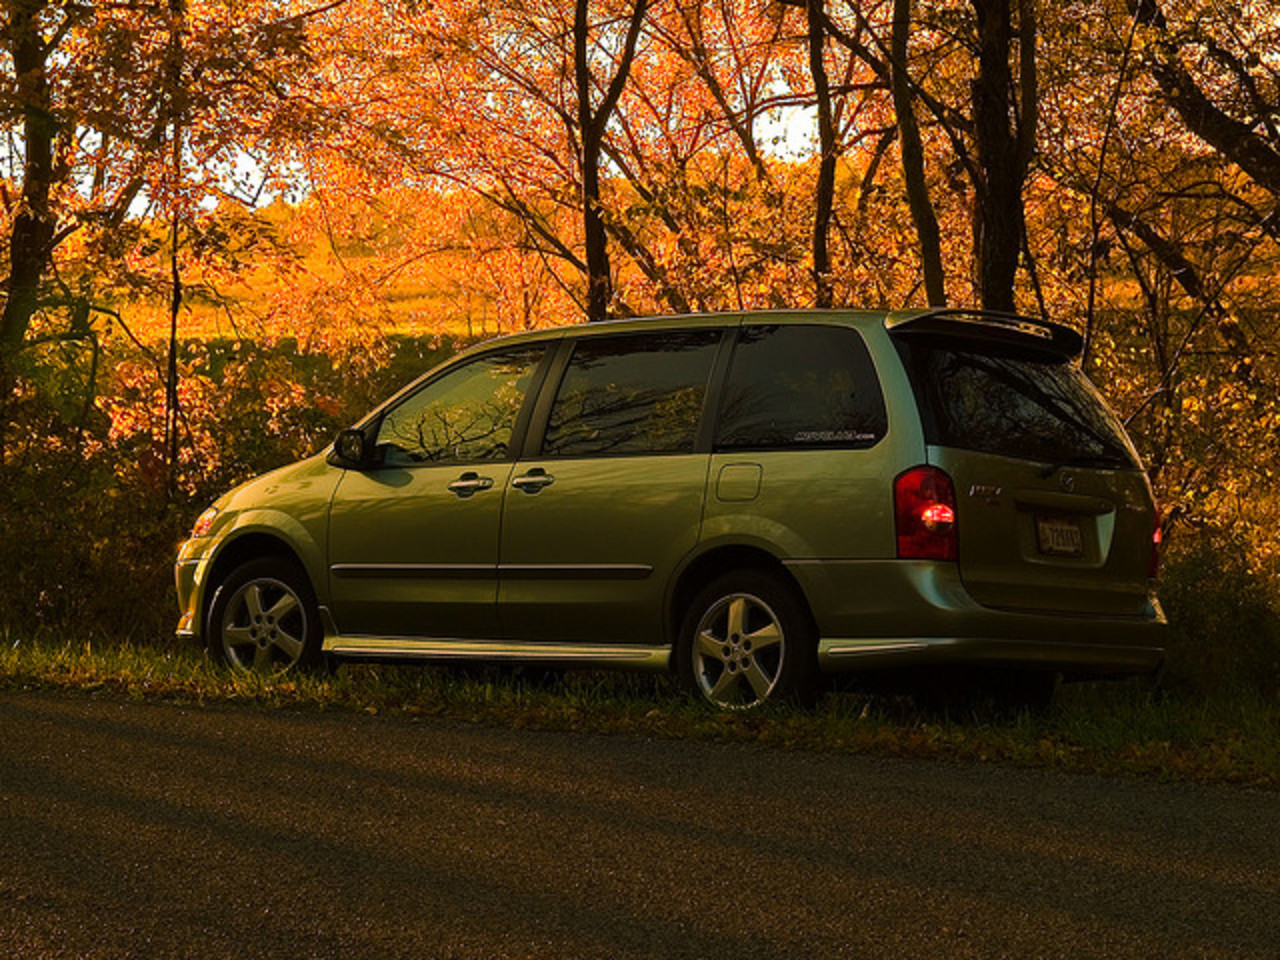 2003 Mazda MPV | Flickr - Photo Sharing!